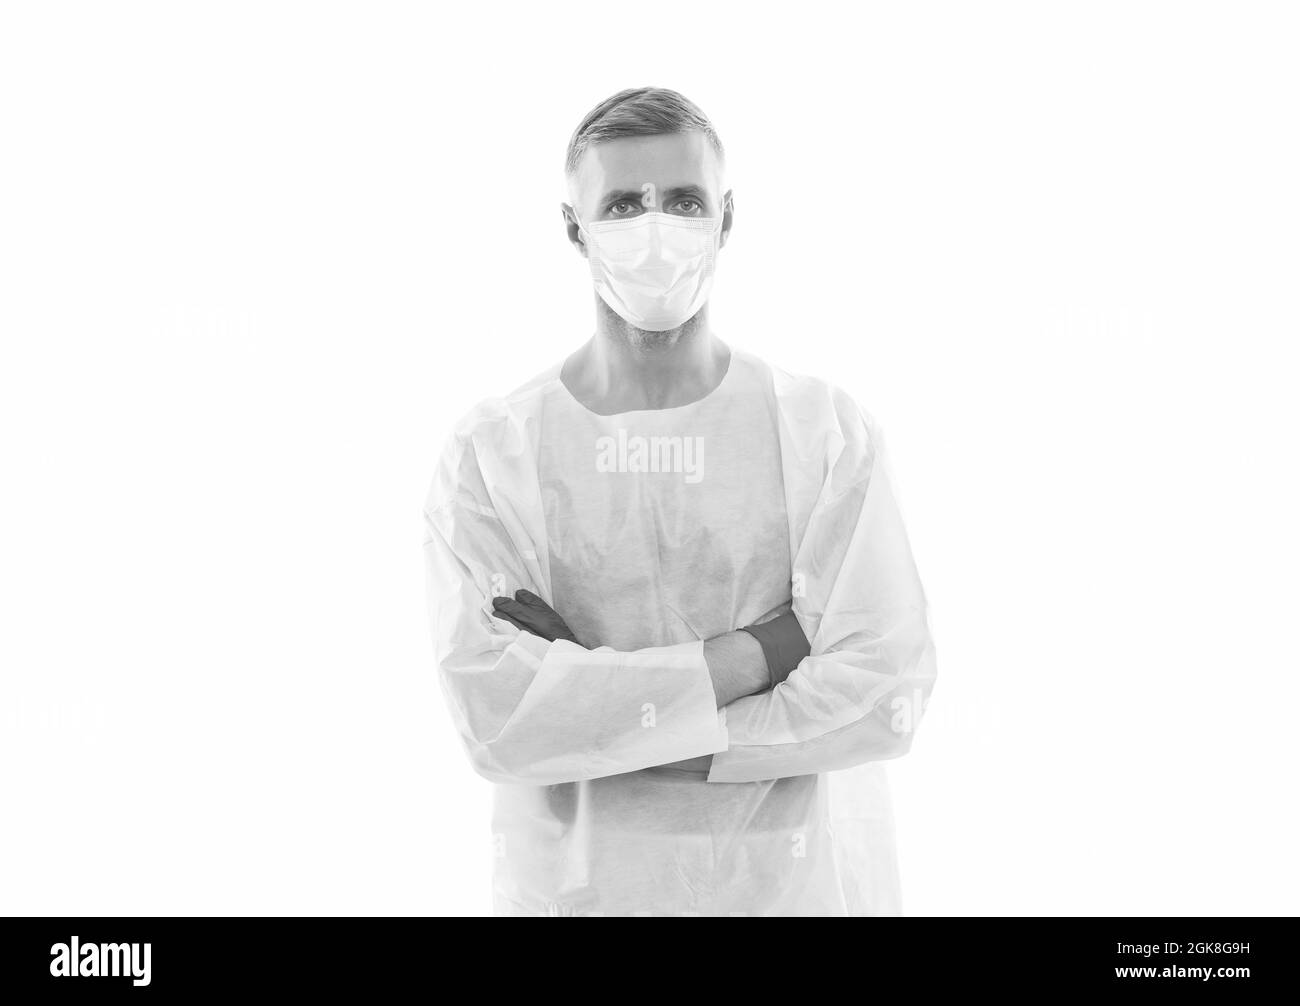 Bereit zur Arbeit. Mann mit Atemschutzmaske medizinische Maske. Arzt in Sicherheitskostüm. Hygiene auf Coronavirus-Pandemie. Wissenschaftler erstellen Virus-Impfstoff. Epidemie Stockfoto